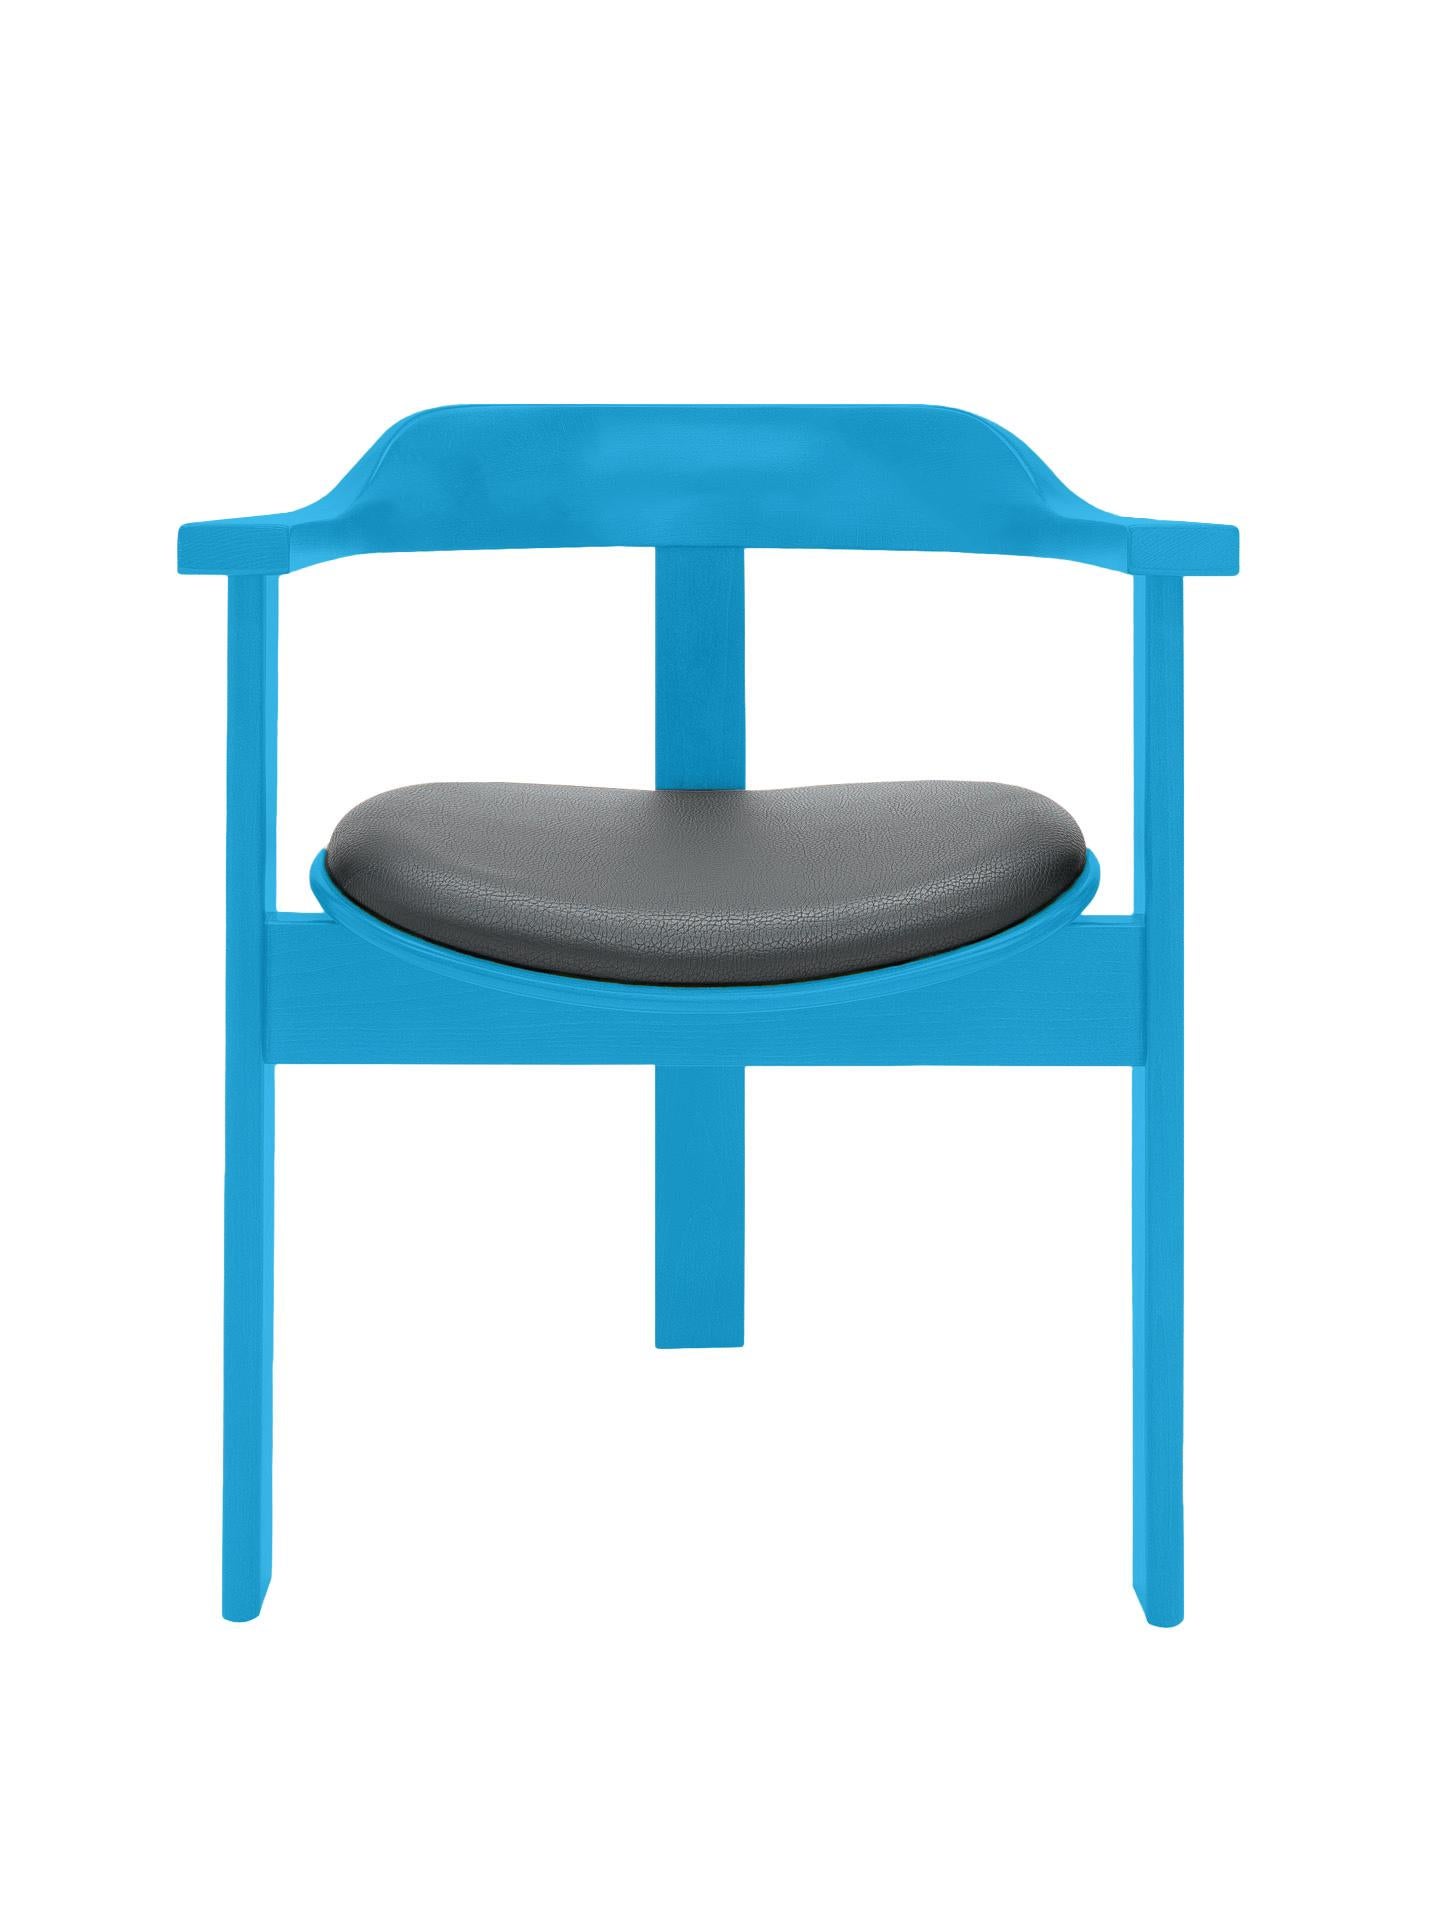 La chaise Haussmann est une pièce intemporelle vibrante de confort et d'élégance.

Cette chaise unique à trois pieds a été présentée pour la première fois à l'